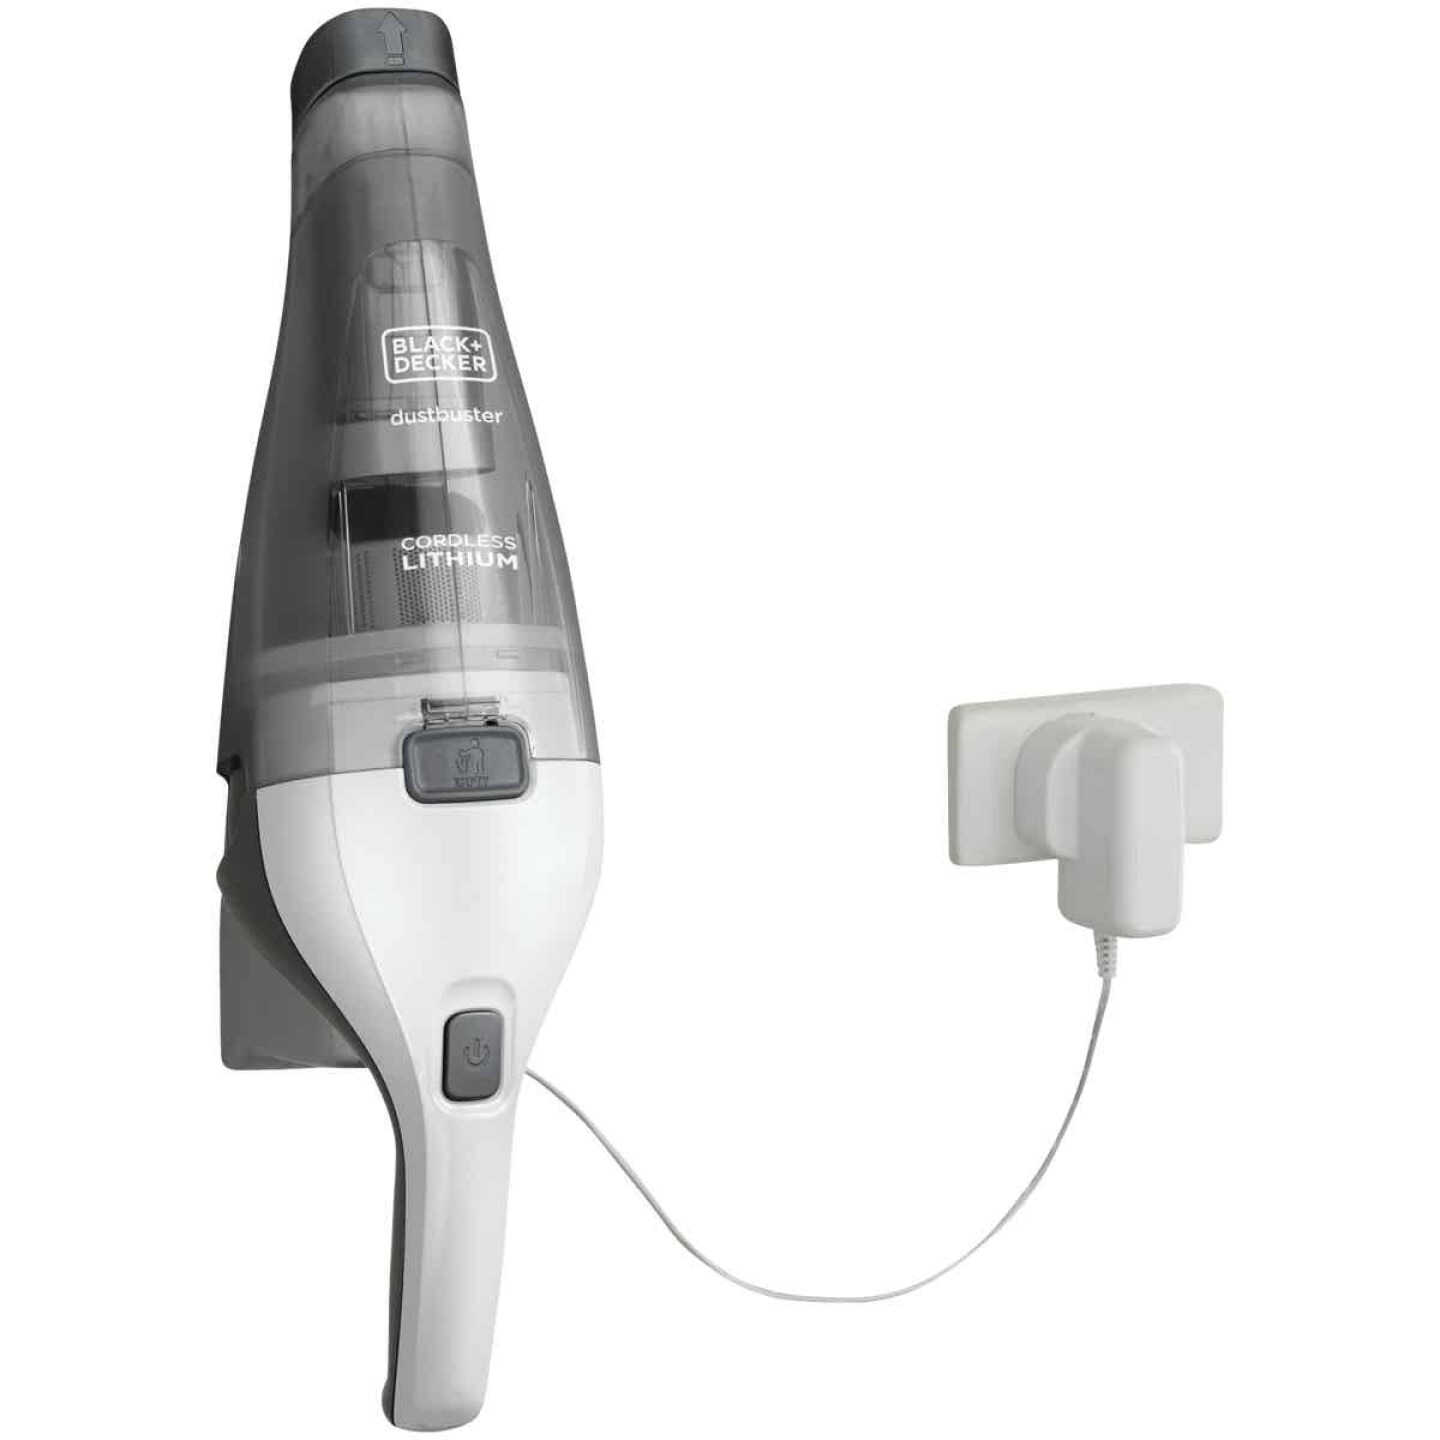 Black & Decker Dustbuster 7.2V 1.5AH White Cordless Handheld Vacuum Cleaner  - Thomas Do-it Center